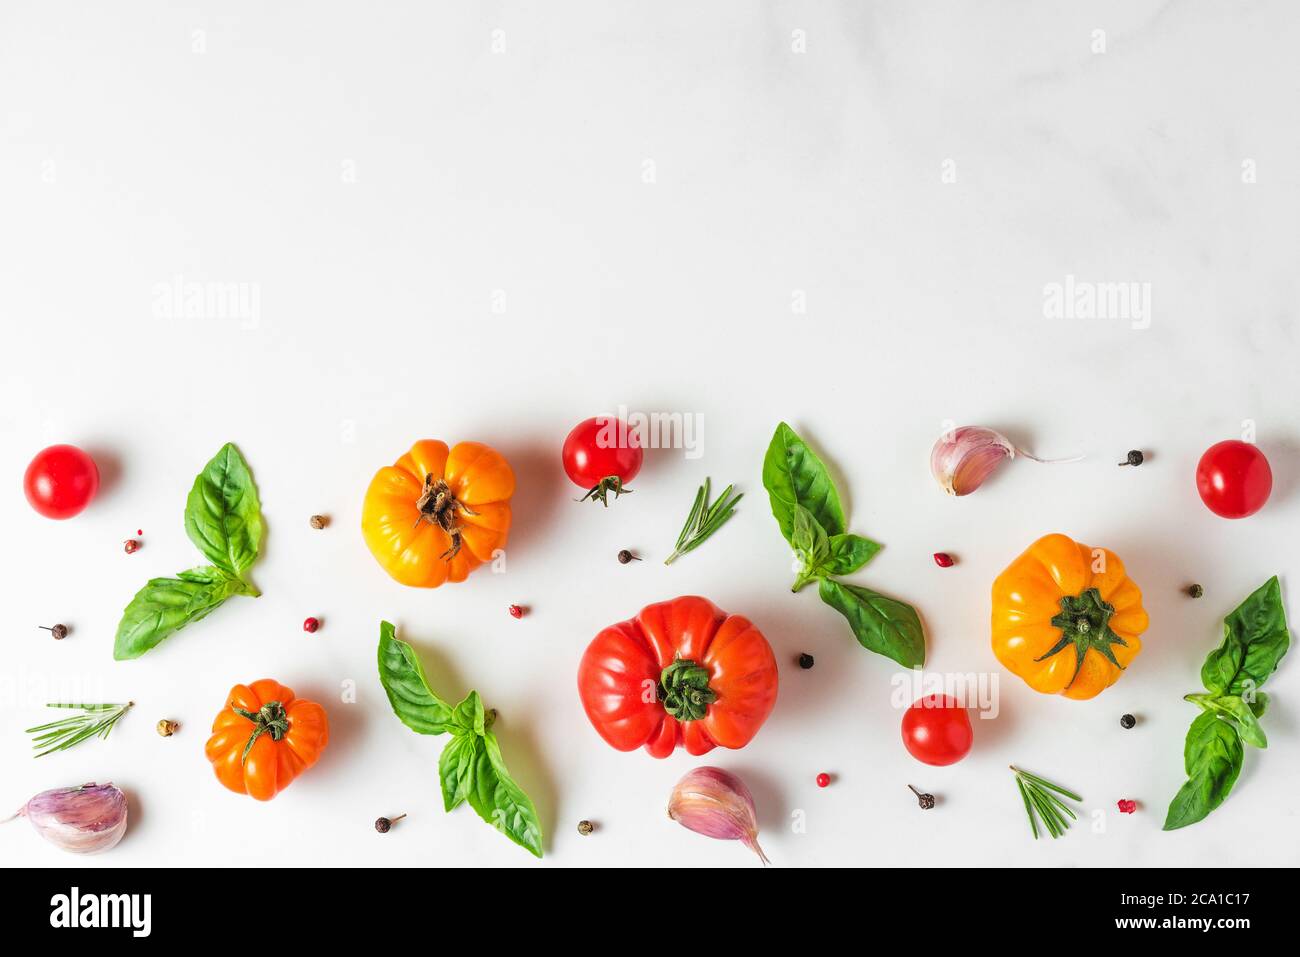 composition des aliments à base de légumes biologiques. tomates, poivre, ail et basilic sur fond blanc. cuisine italienne concept de cuisine. vue de dessus avec co Banque D'Images